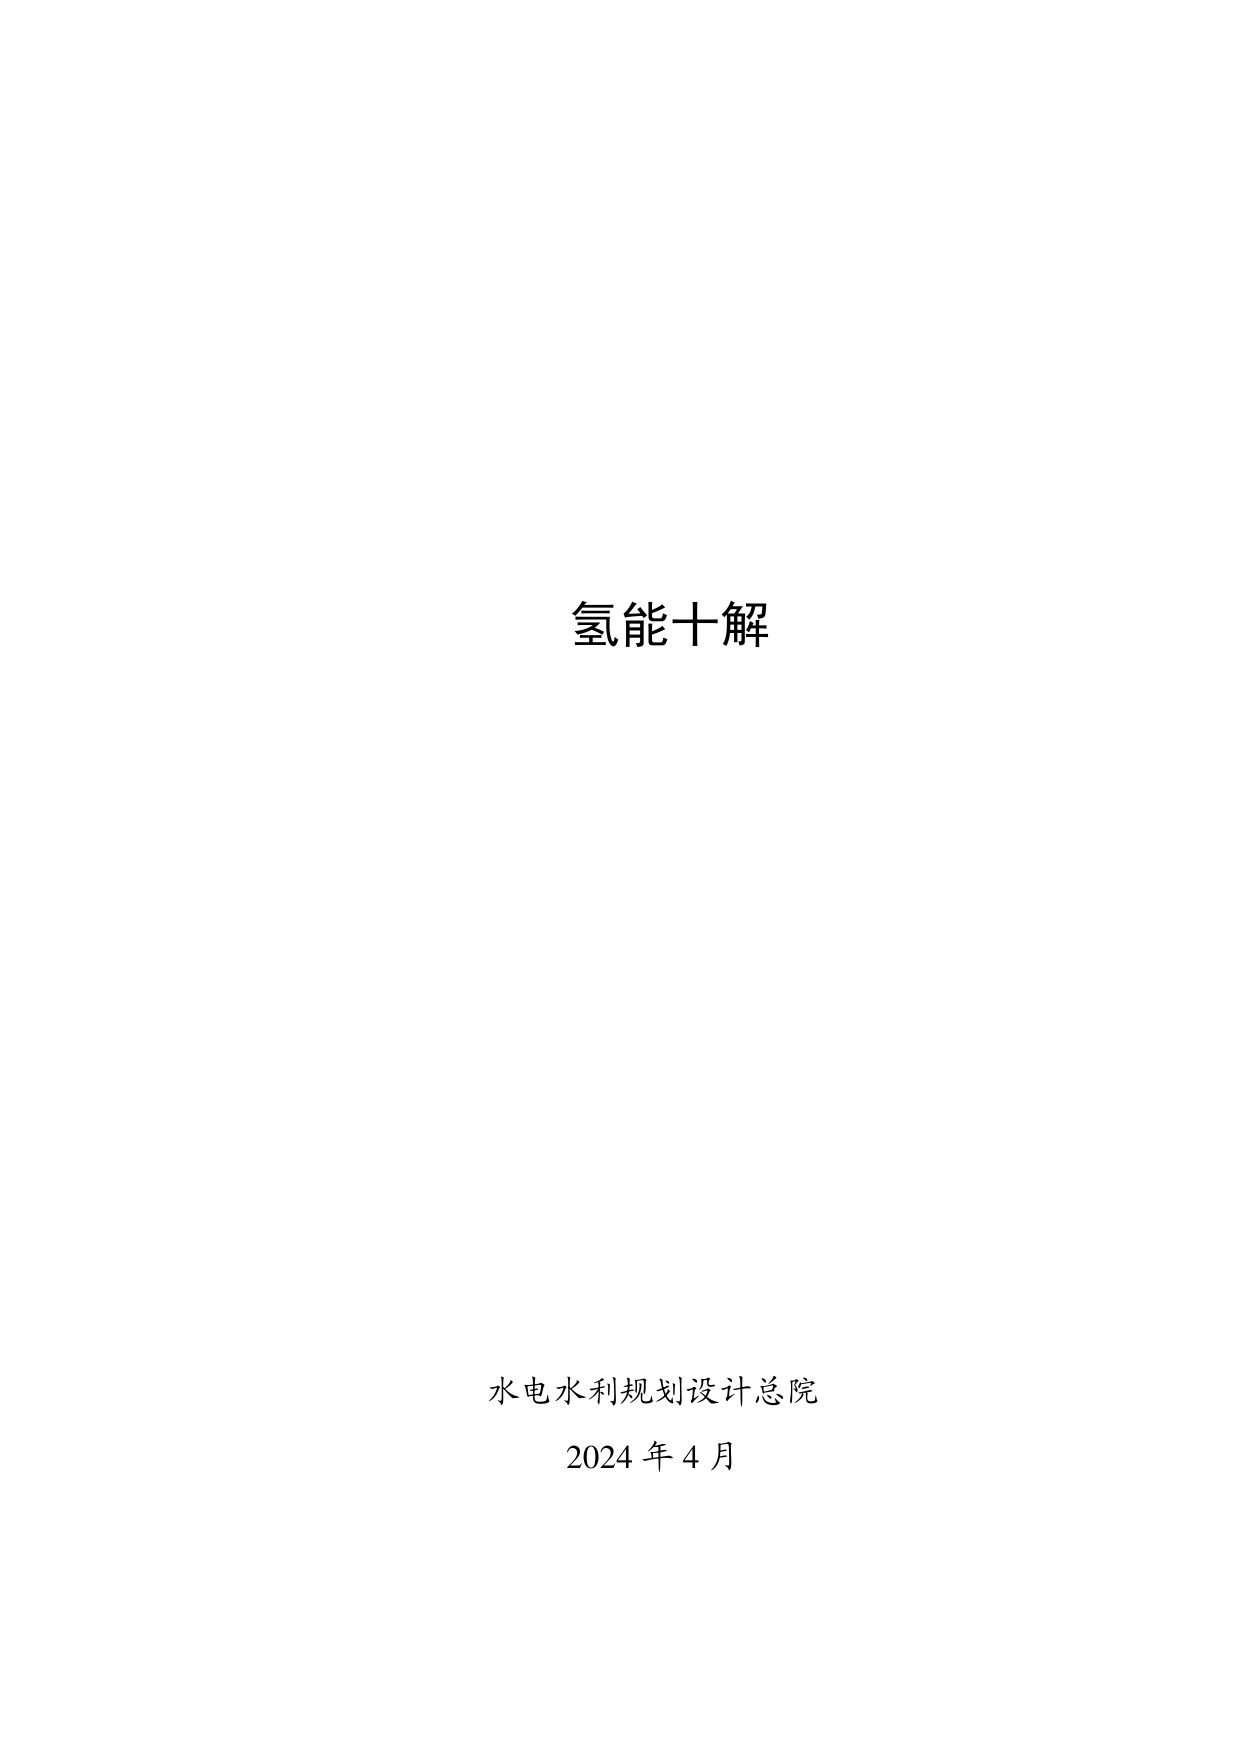 氢能十解-水电水利规划设计总院.pdf